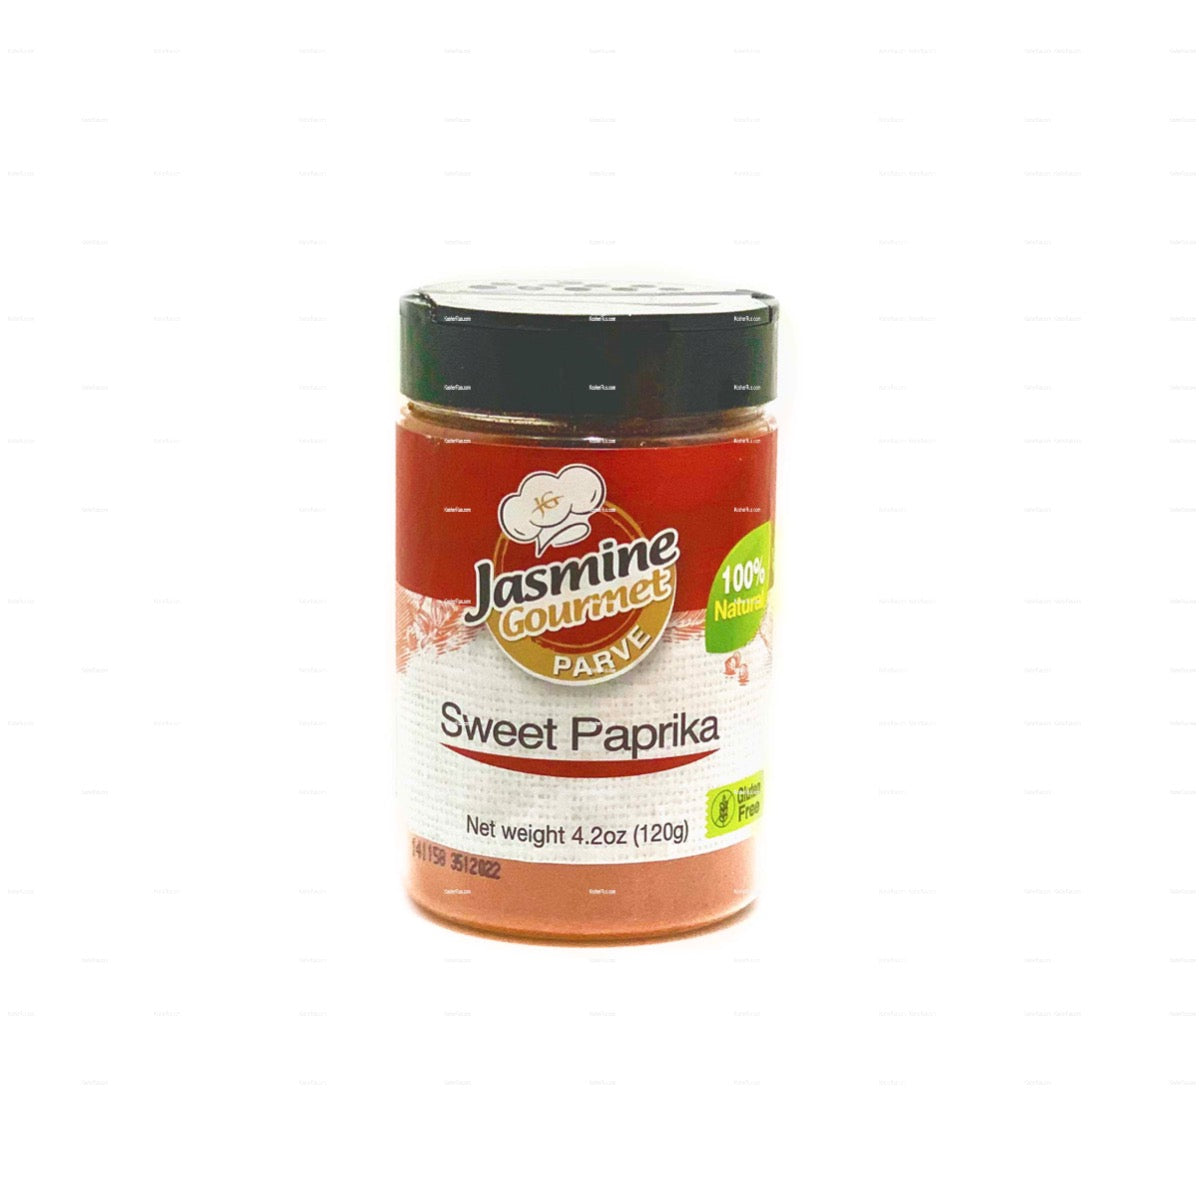 Jasmine Gourmet Sweet Paprika 4.2oz